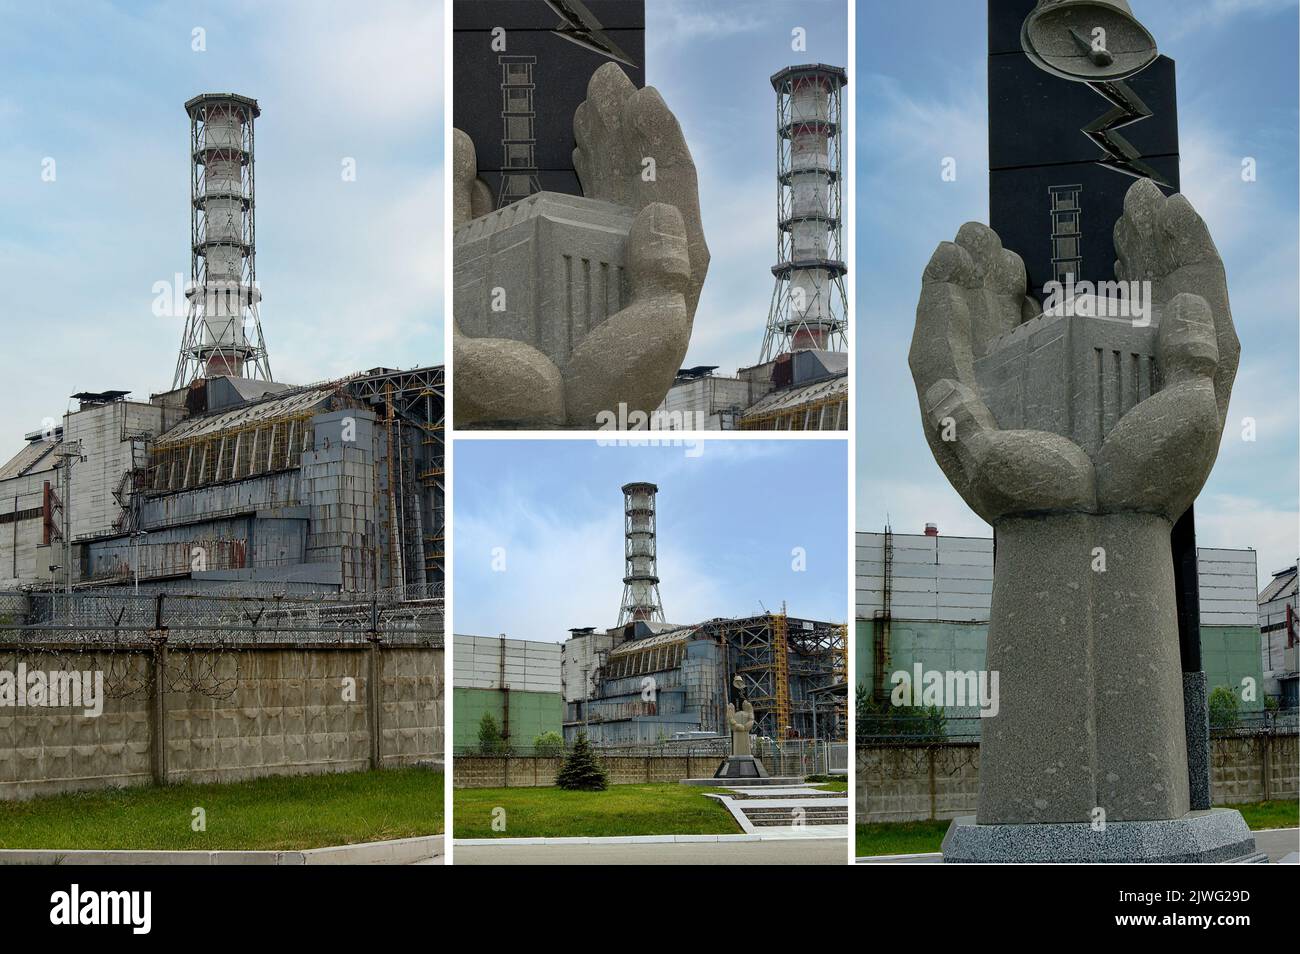 Die gruselige Stadt Pripyat (Ukrain), die für die Katastrophe von Tschernobyl bekannt ist, in ihrer Sperrzone, immer noch radioaktiv und gefährlich. (7) Stockfoto